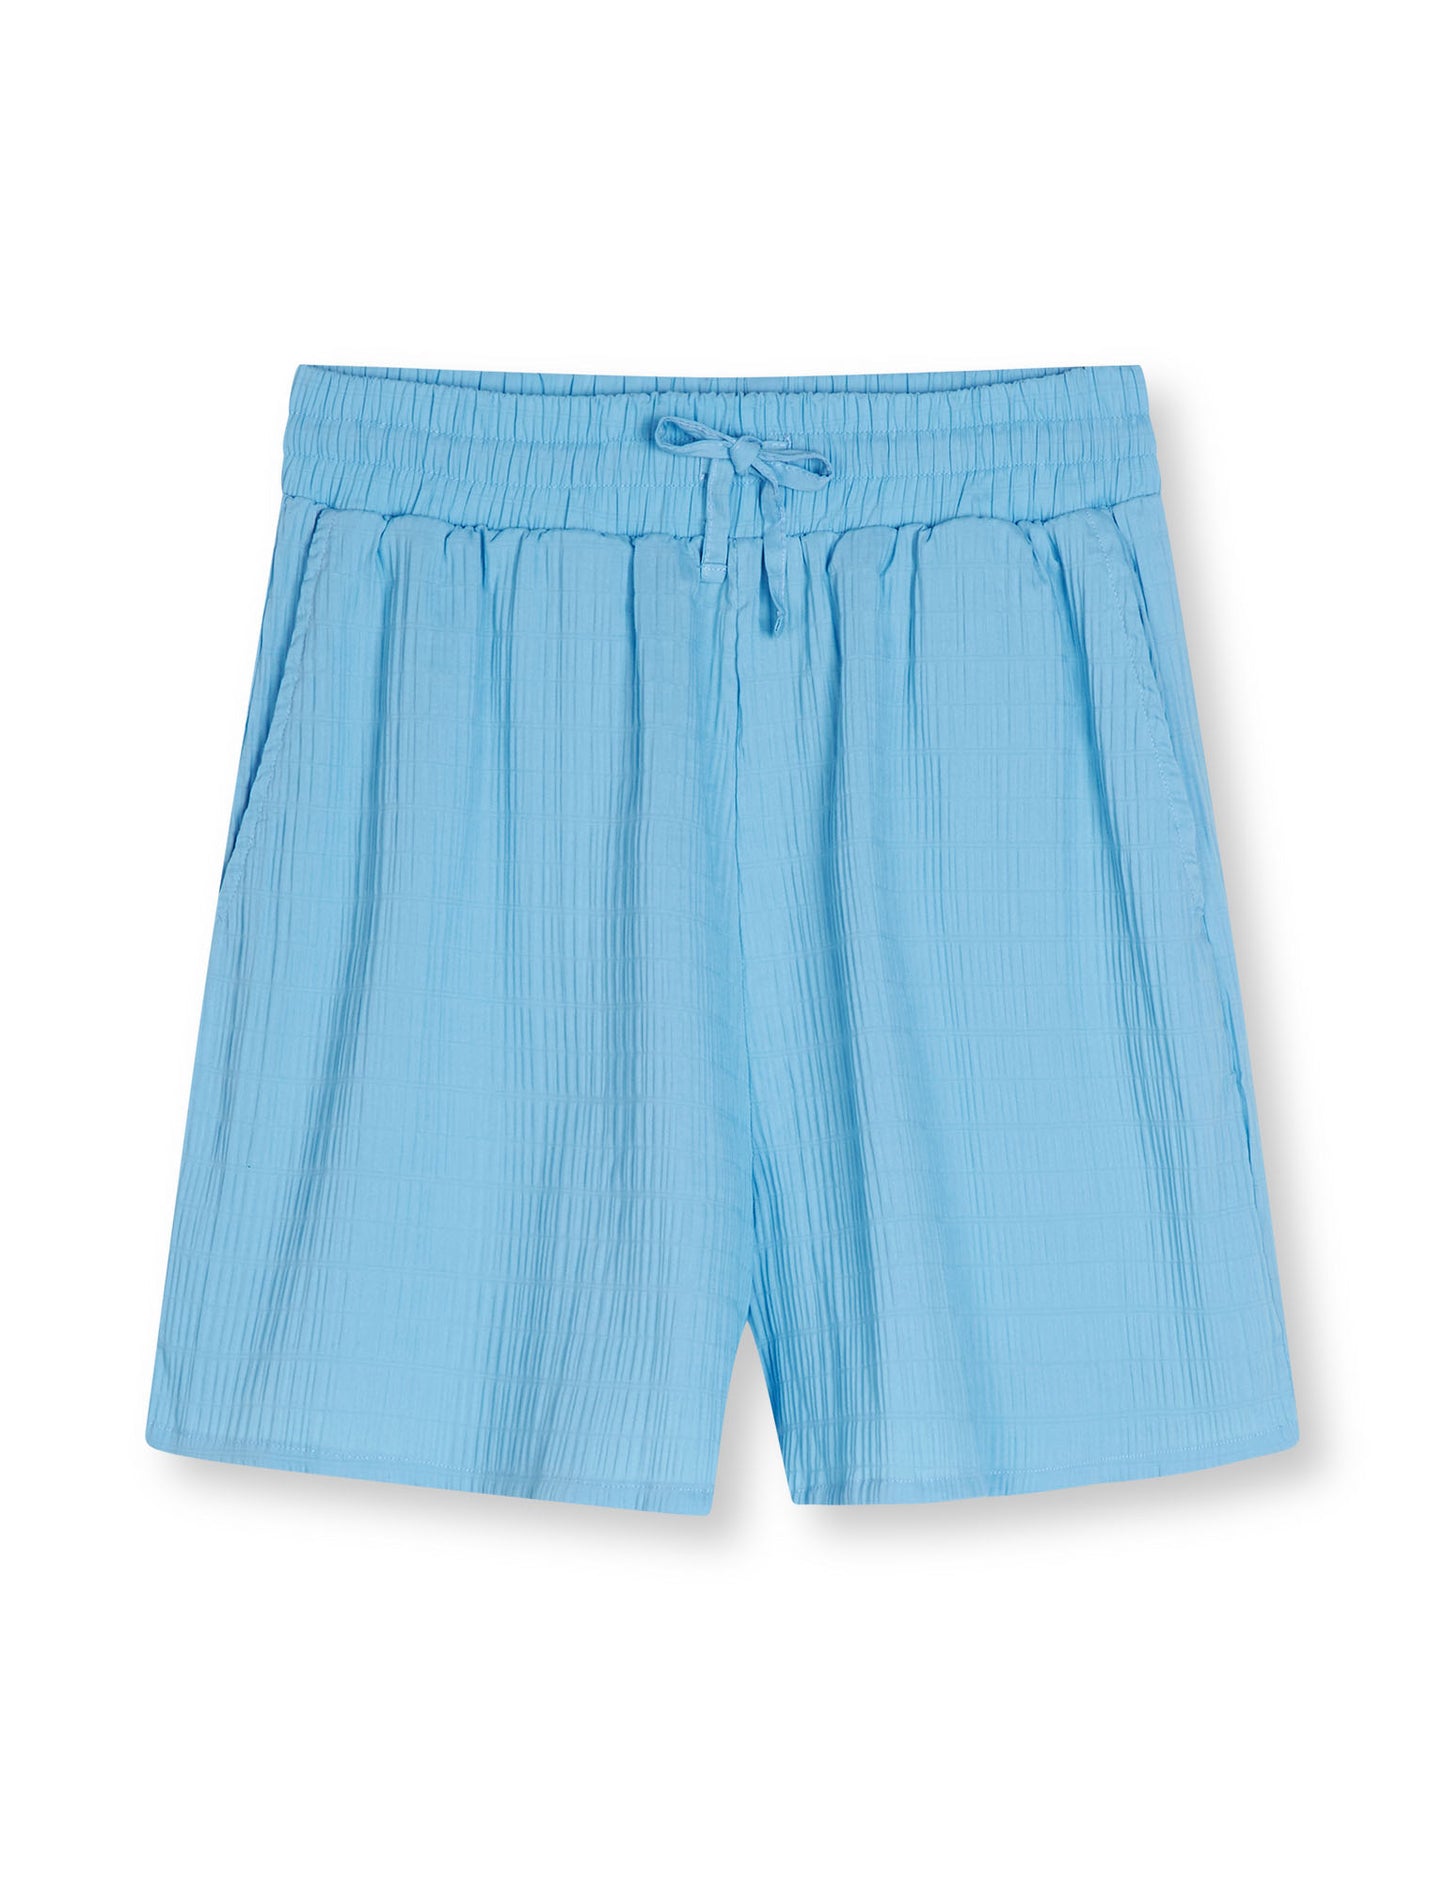 Crinckle Pop Dora Shorts, Alaskan Blue